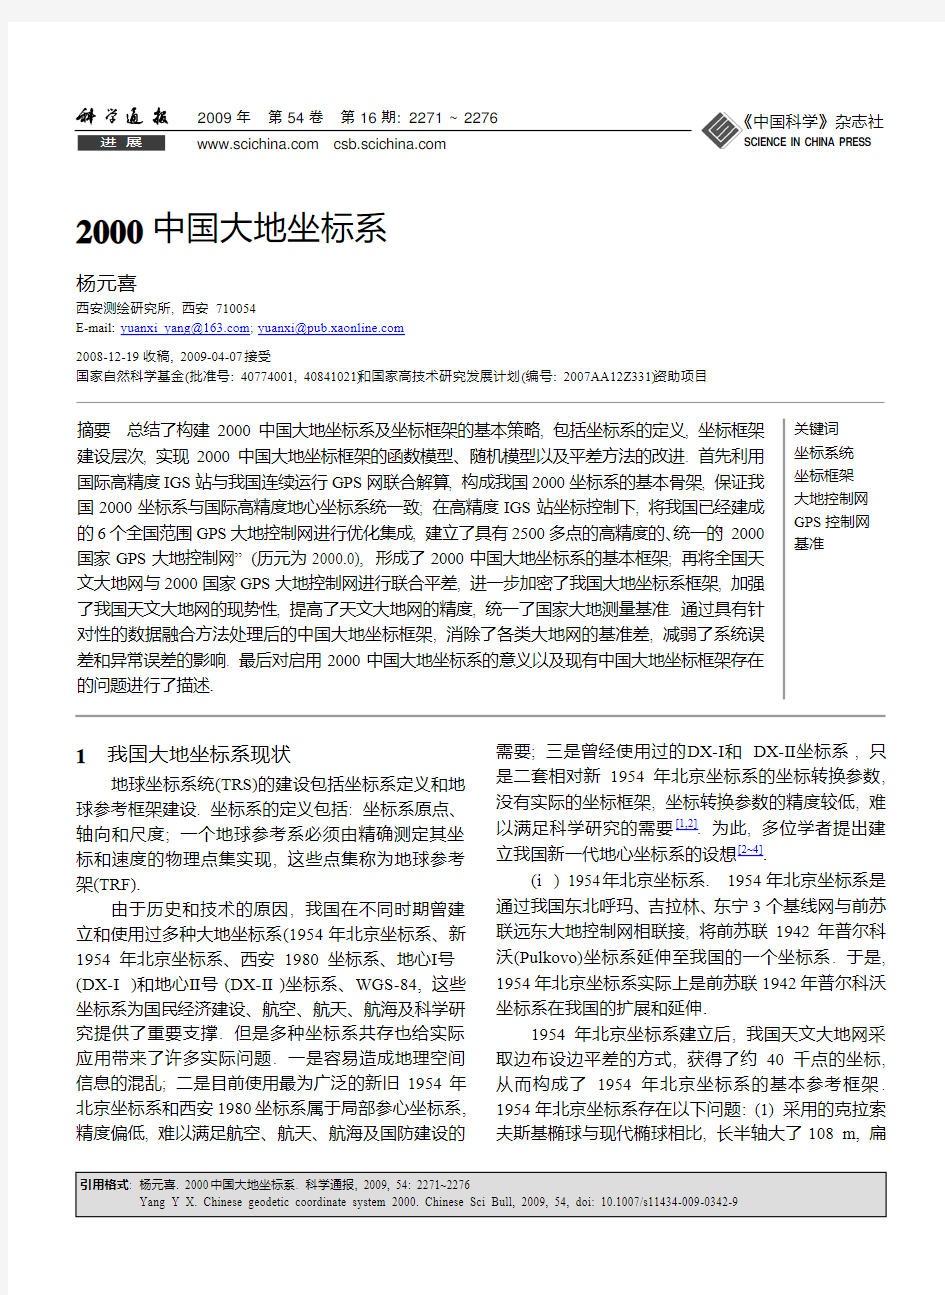 2000中国大地坐标系